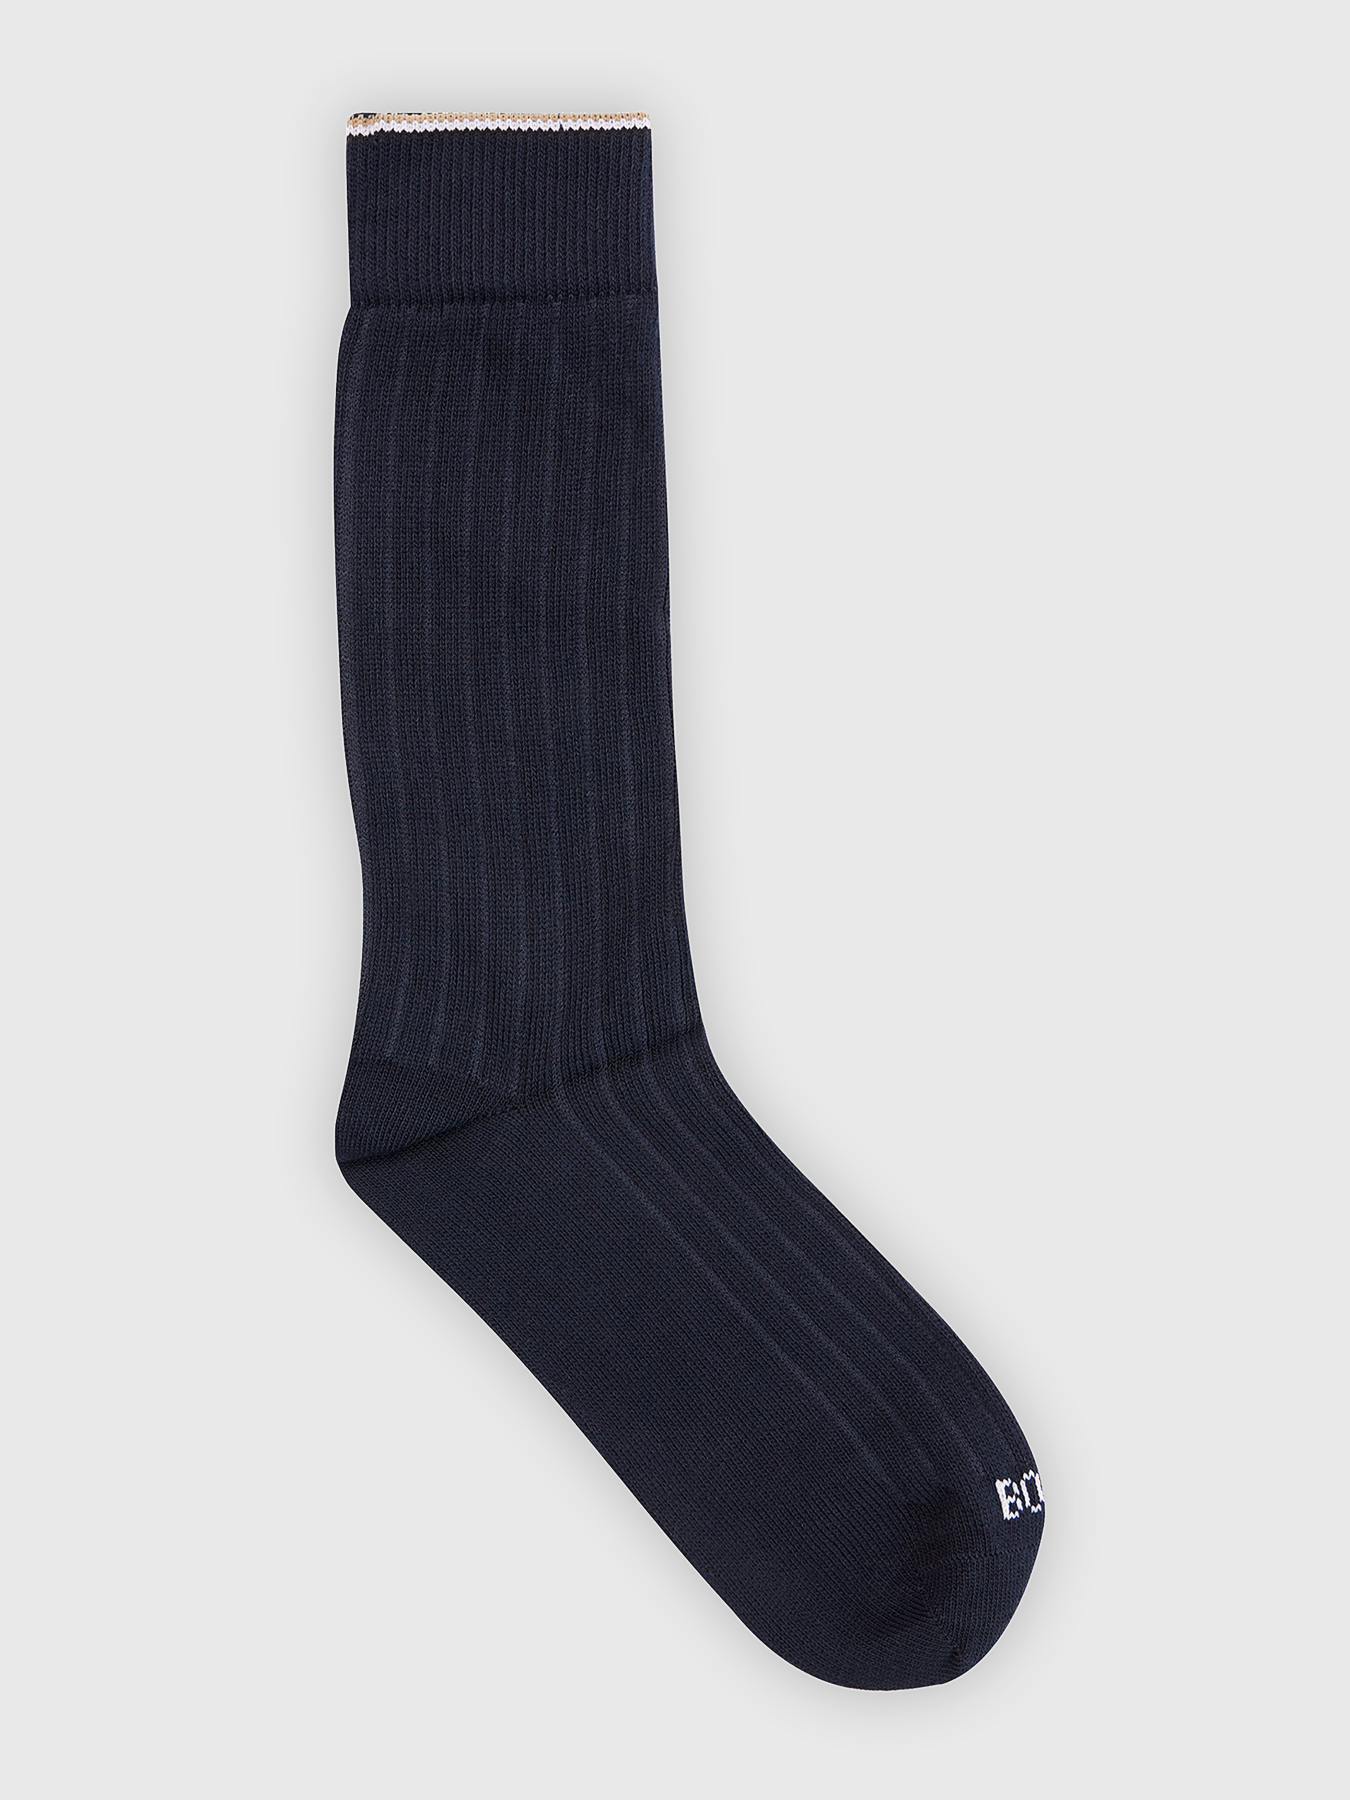 Dark blue socks brand BOSS — Globalbrandsstore.com/en